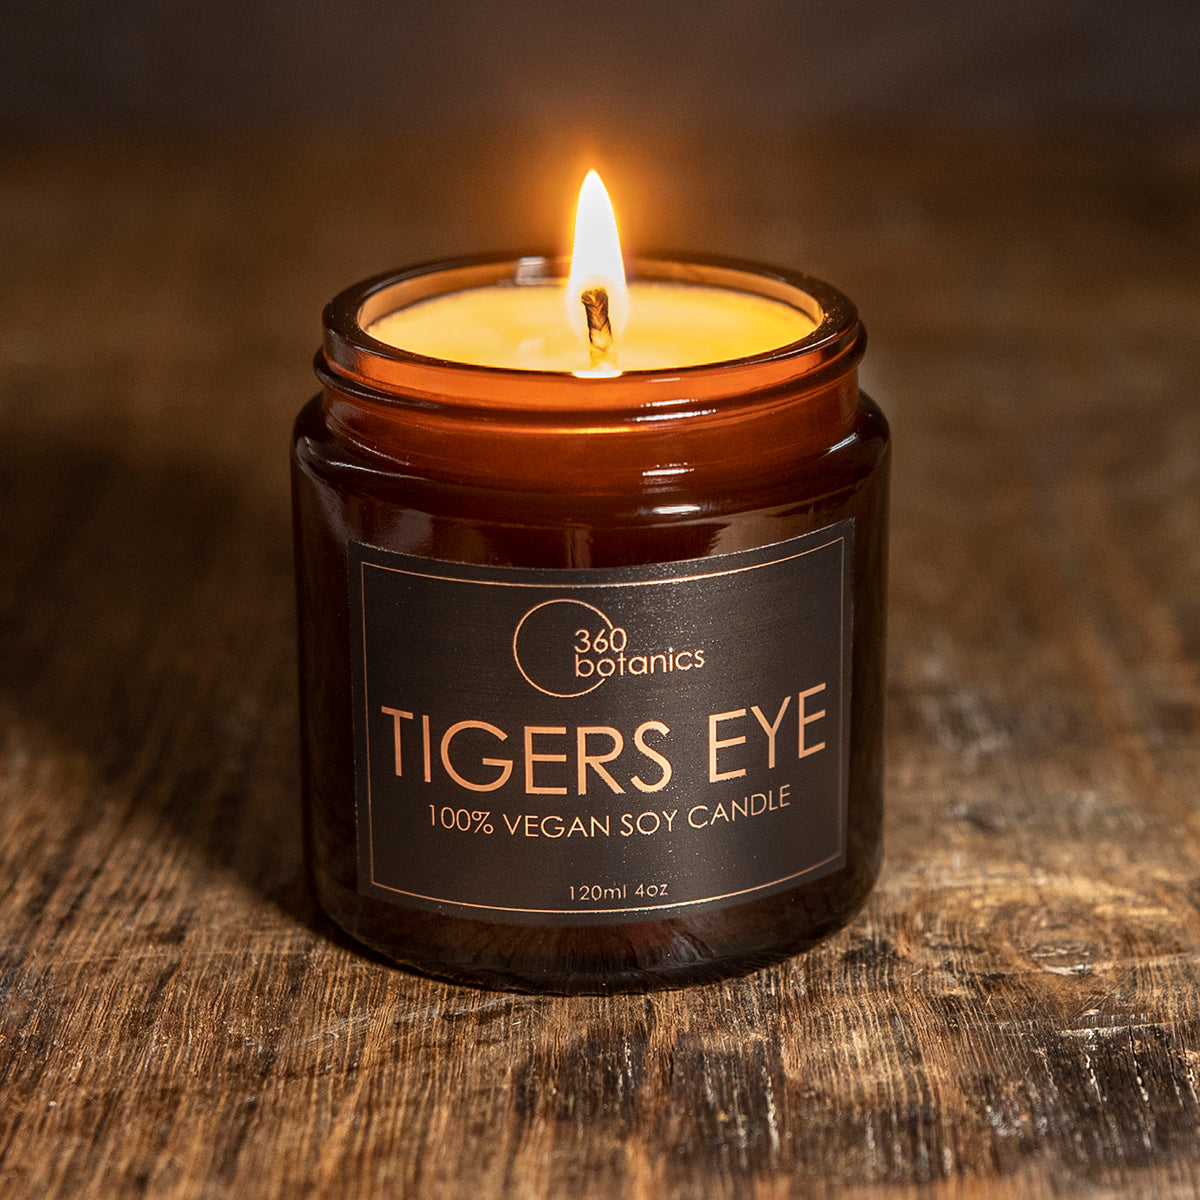 360botanics-Tigerseye-vegan-soy-Candle photographed on dark tone background